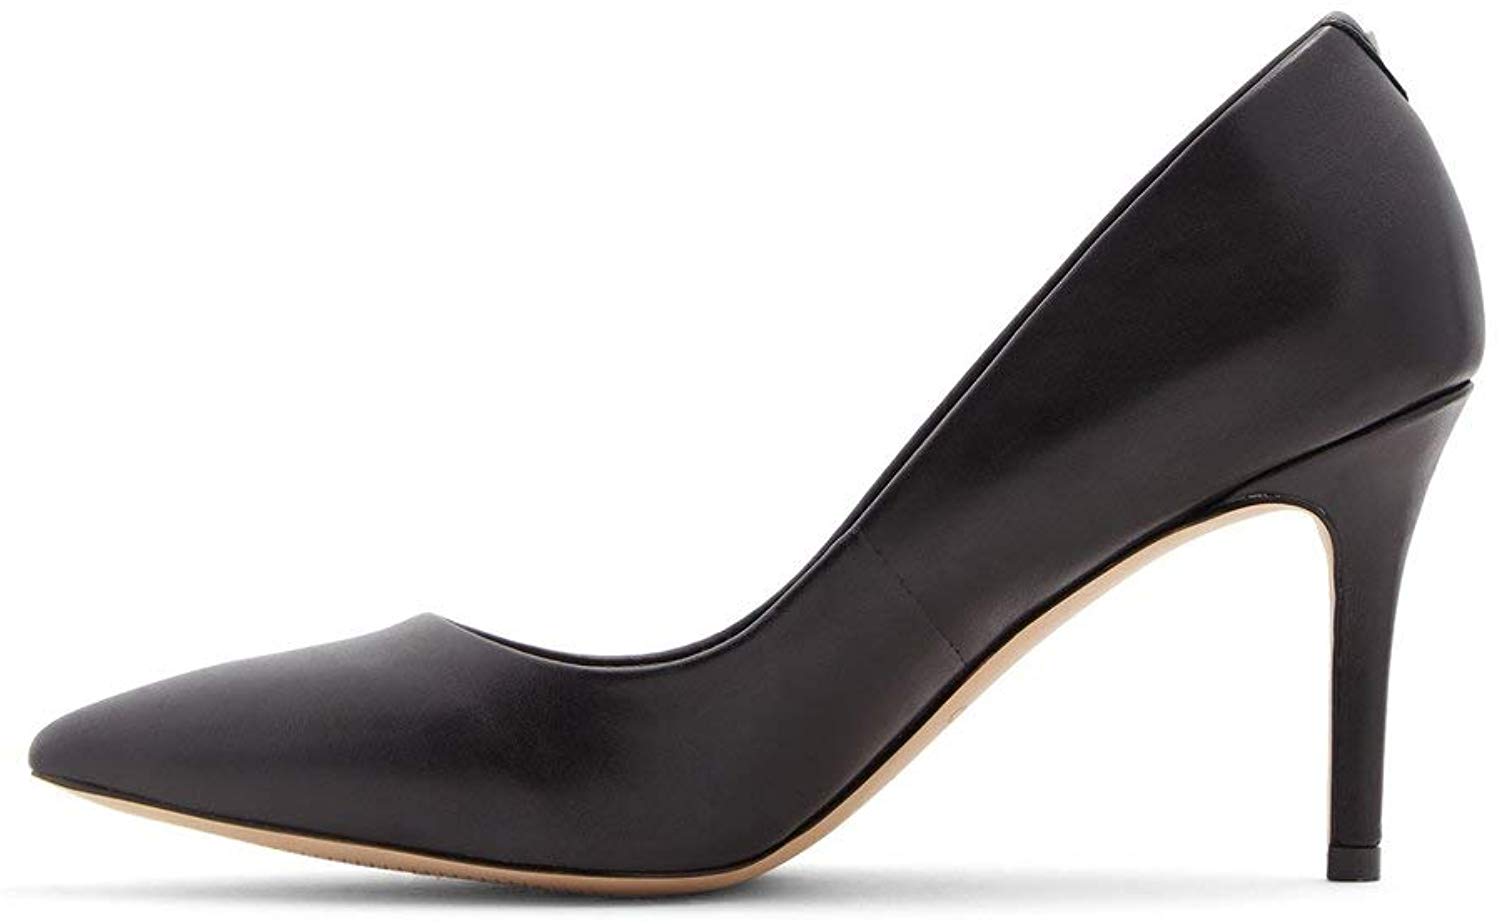 Aldo Womens Heels & Pumps in Black Color, Size 6.5 BXR | eBay